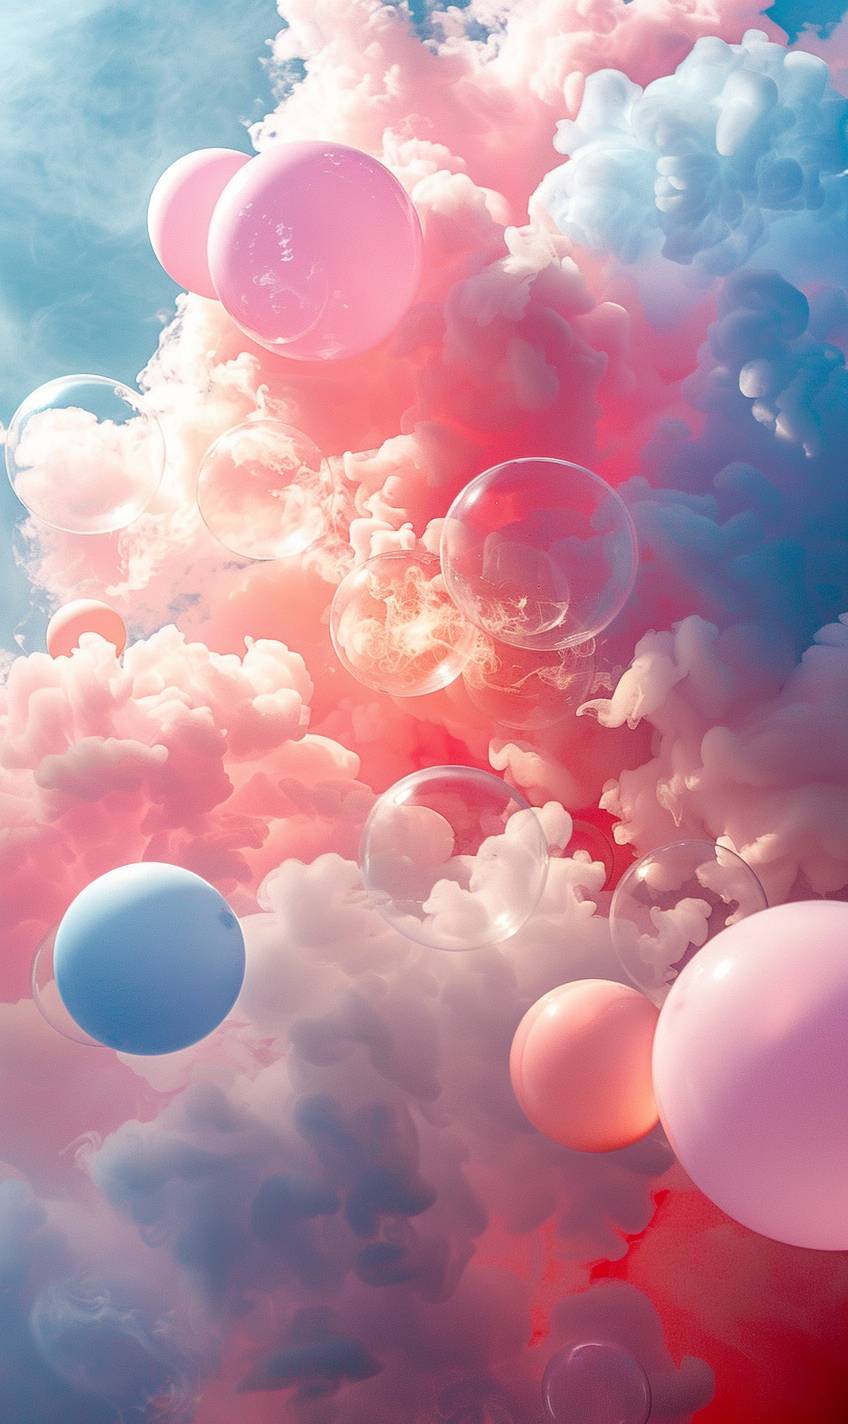 互いに重なり合う薄い空気の中で、異なる直径のパステルピンクとパステルブルーの円が浮かんでいます。雲のような神秘的な雰囲気。